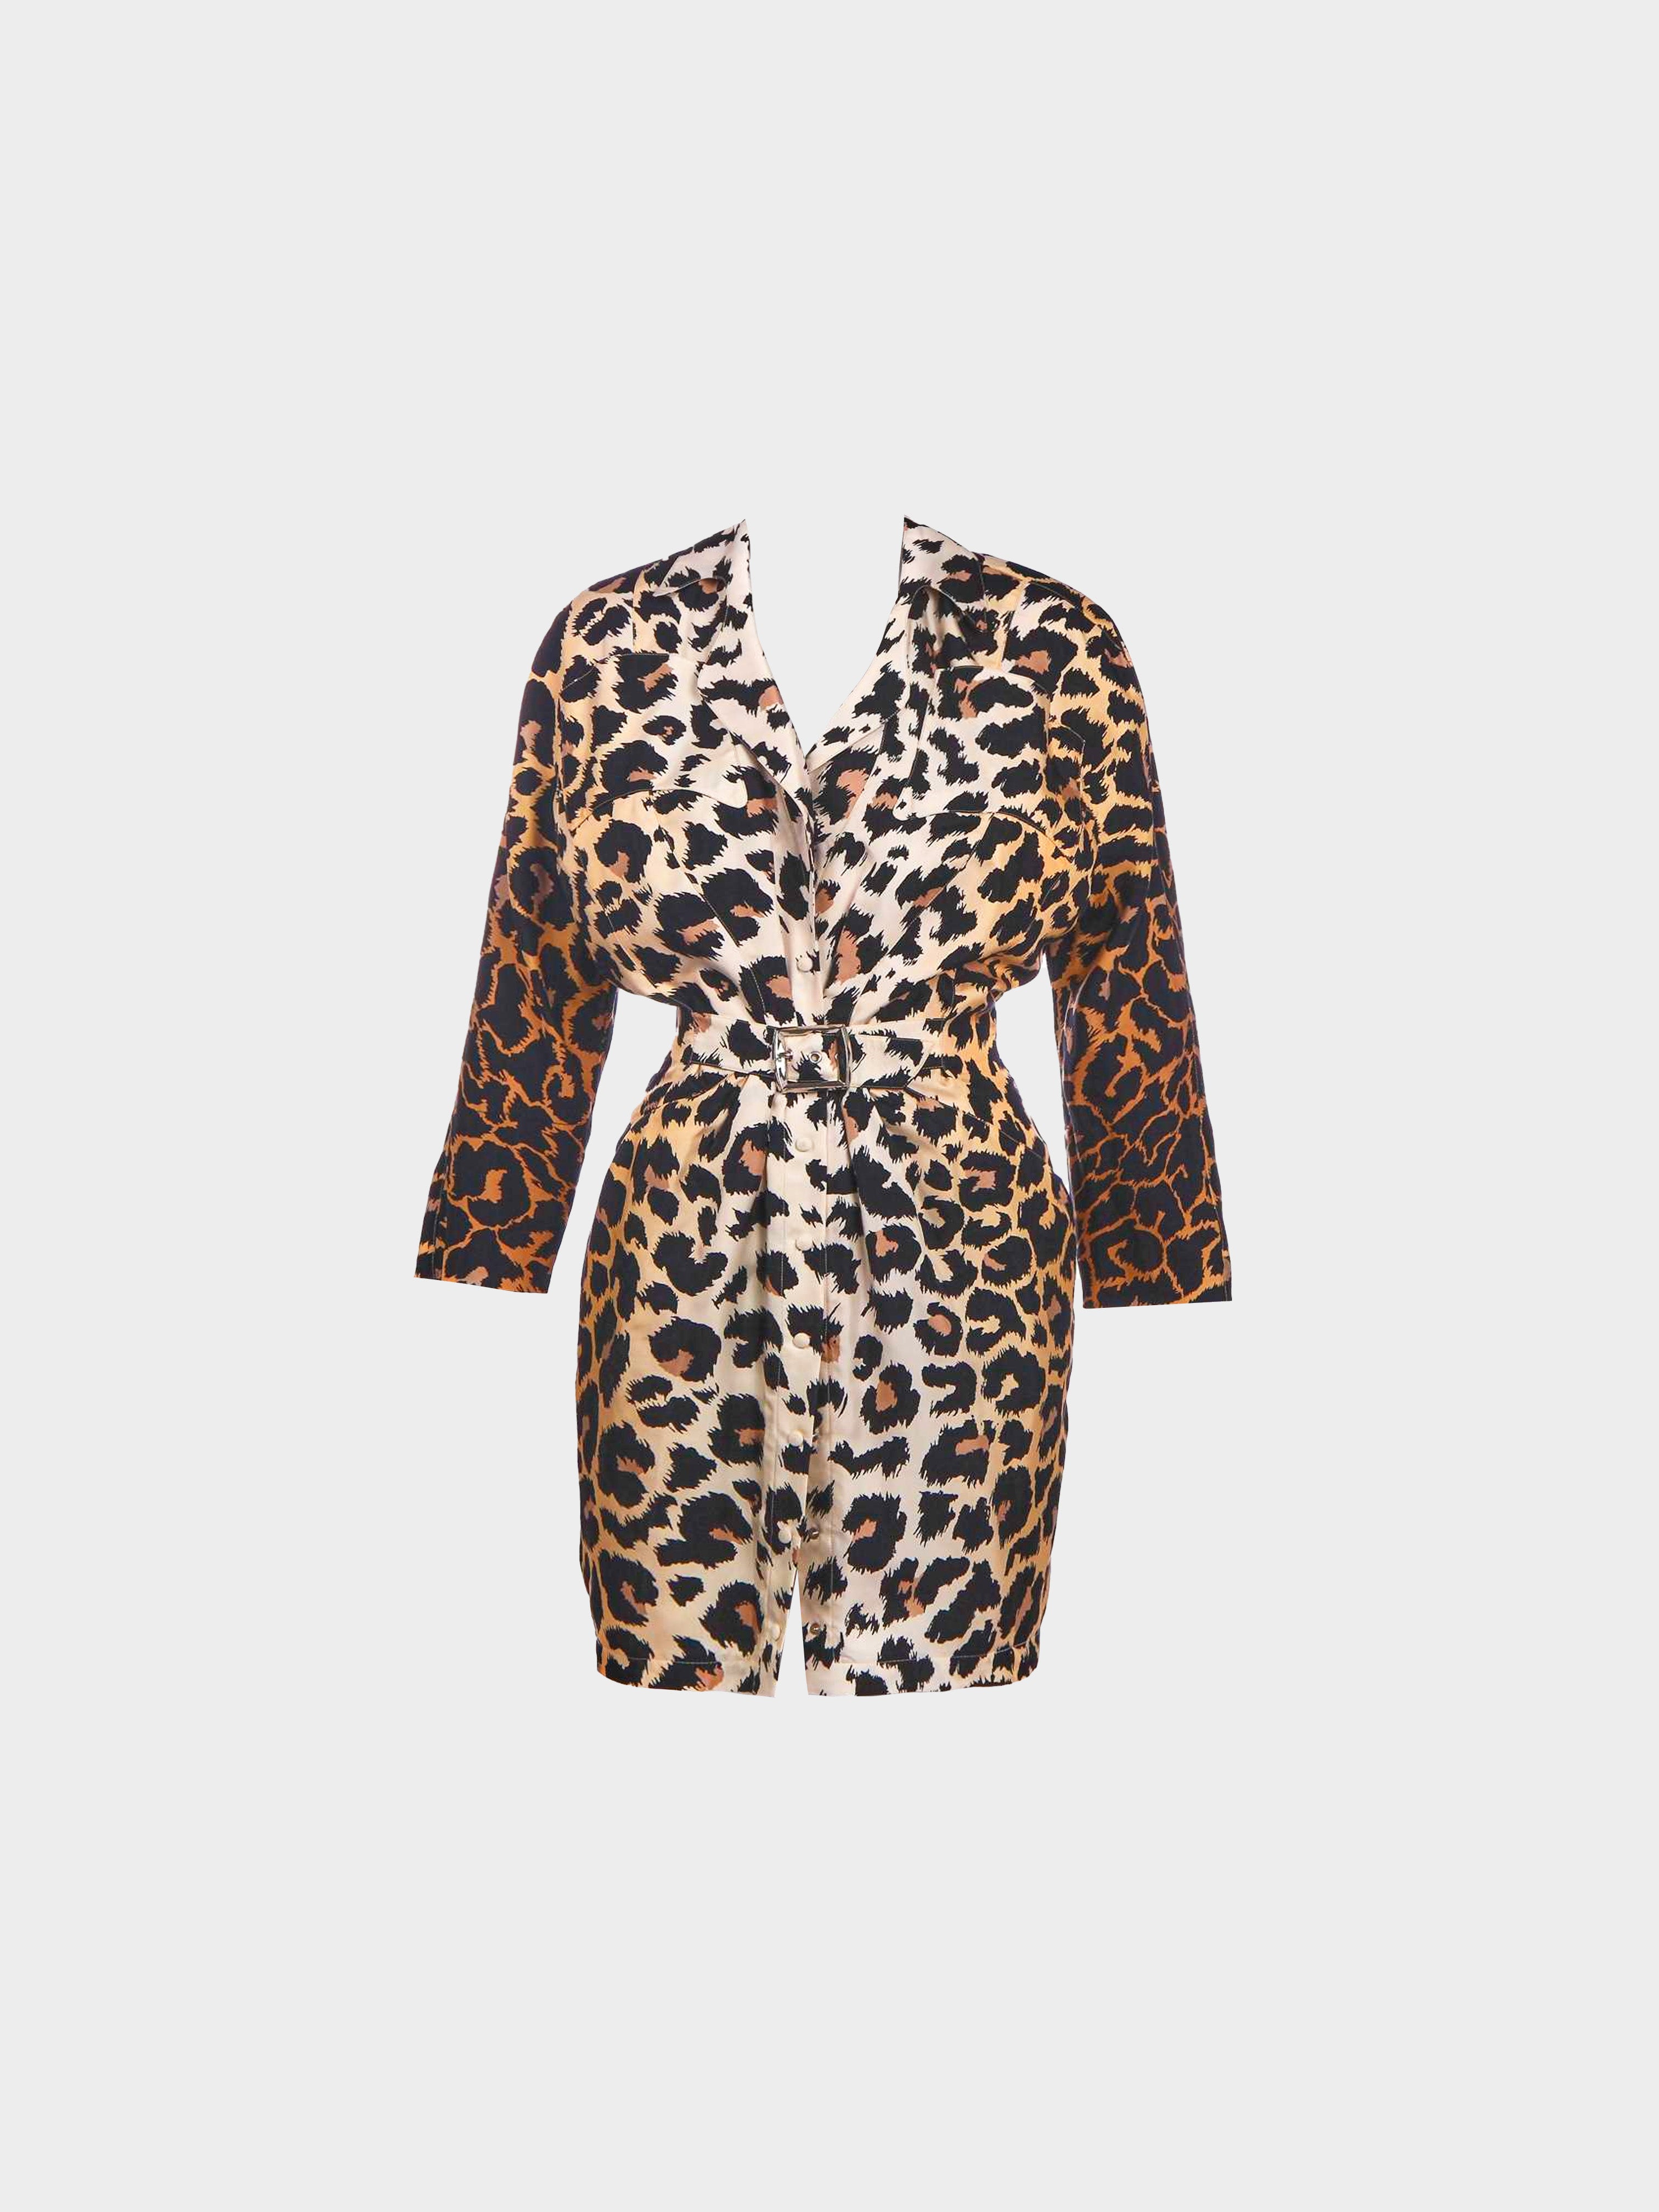 Thierry Mugler SS 1996 Silk Belted Leopard Print Dress